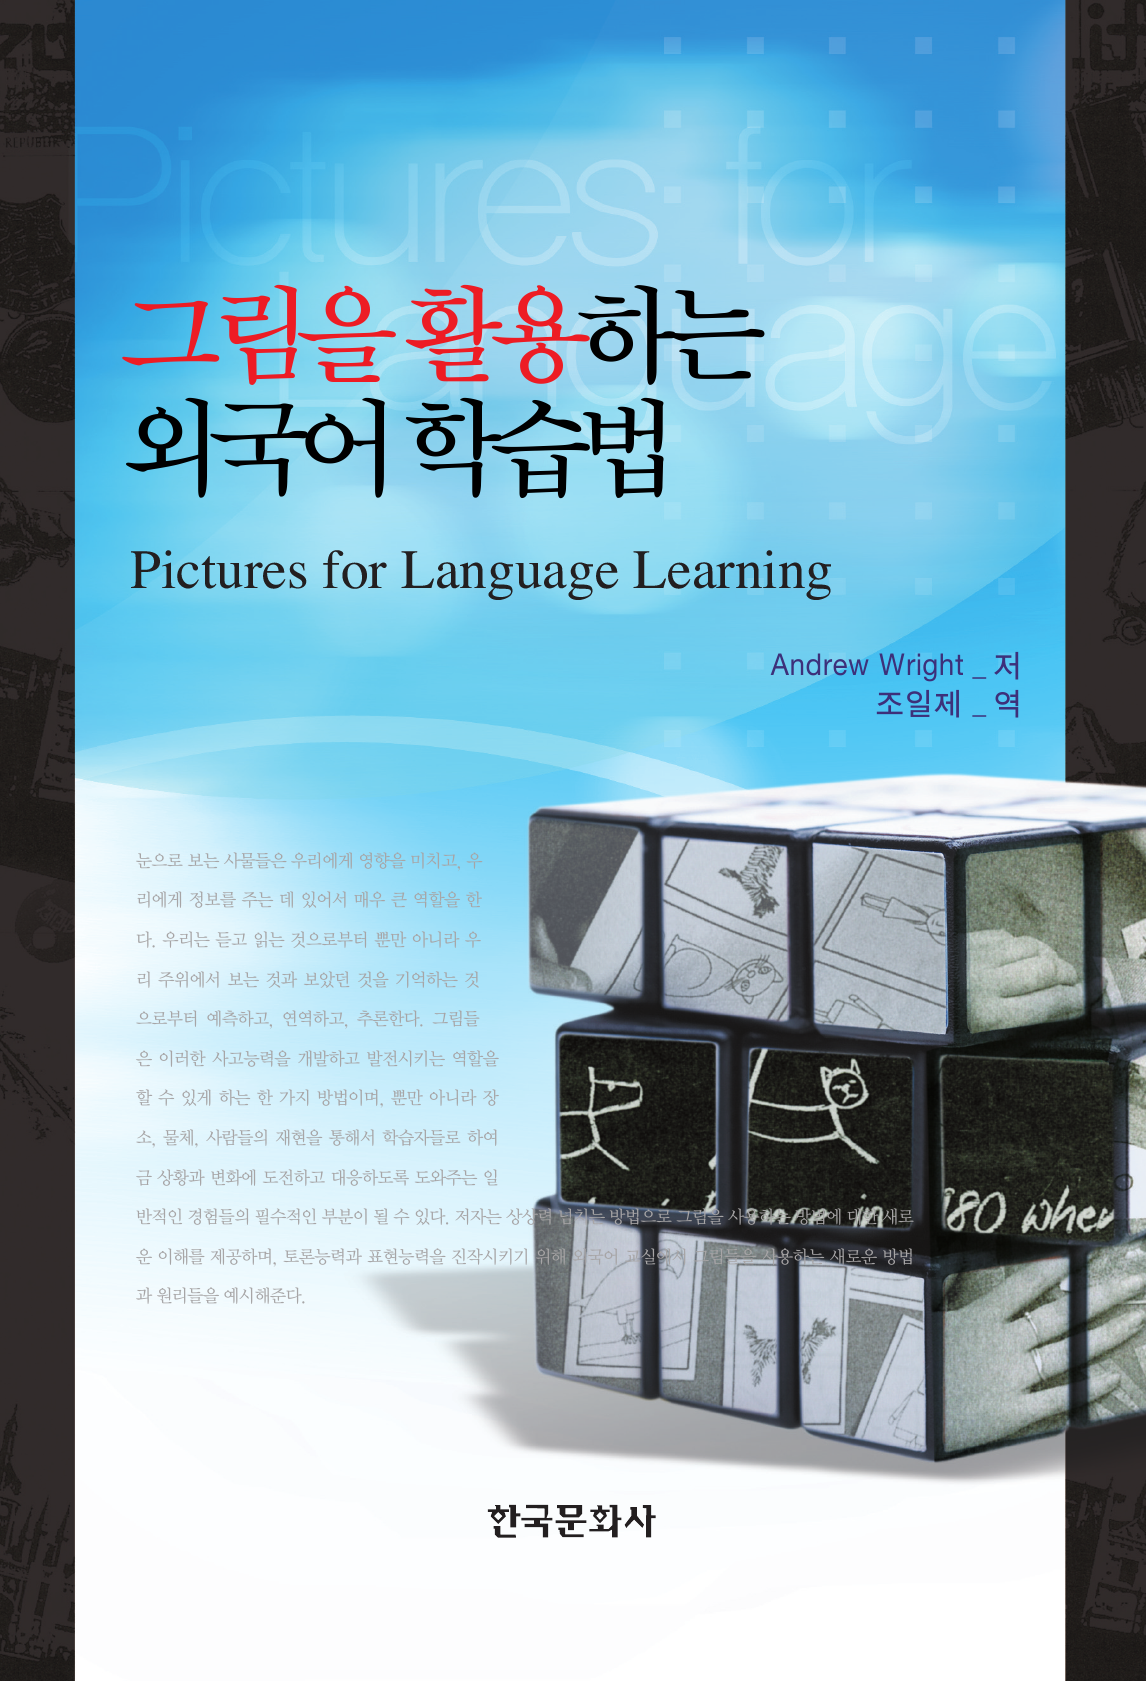 그림을 활용하는 외국어 학습법(Pictures for Language Learning)